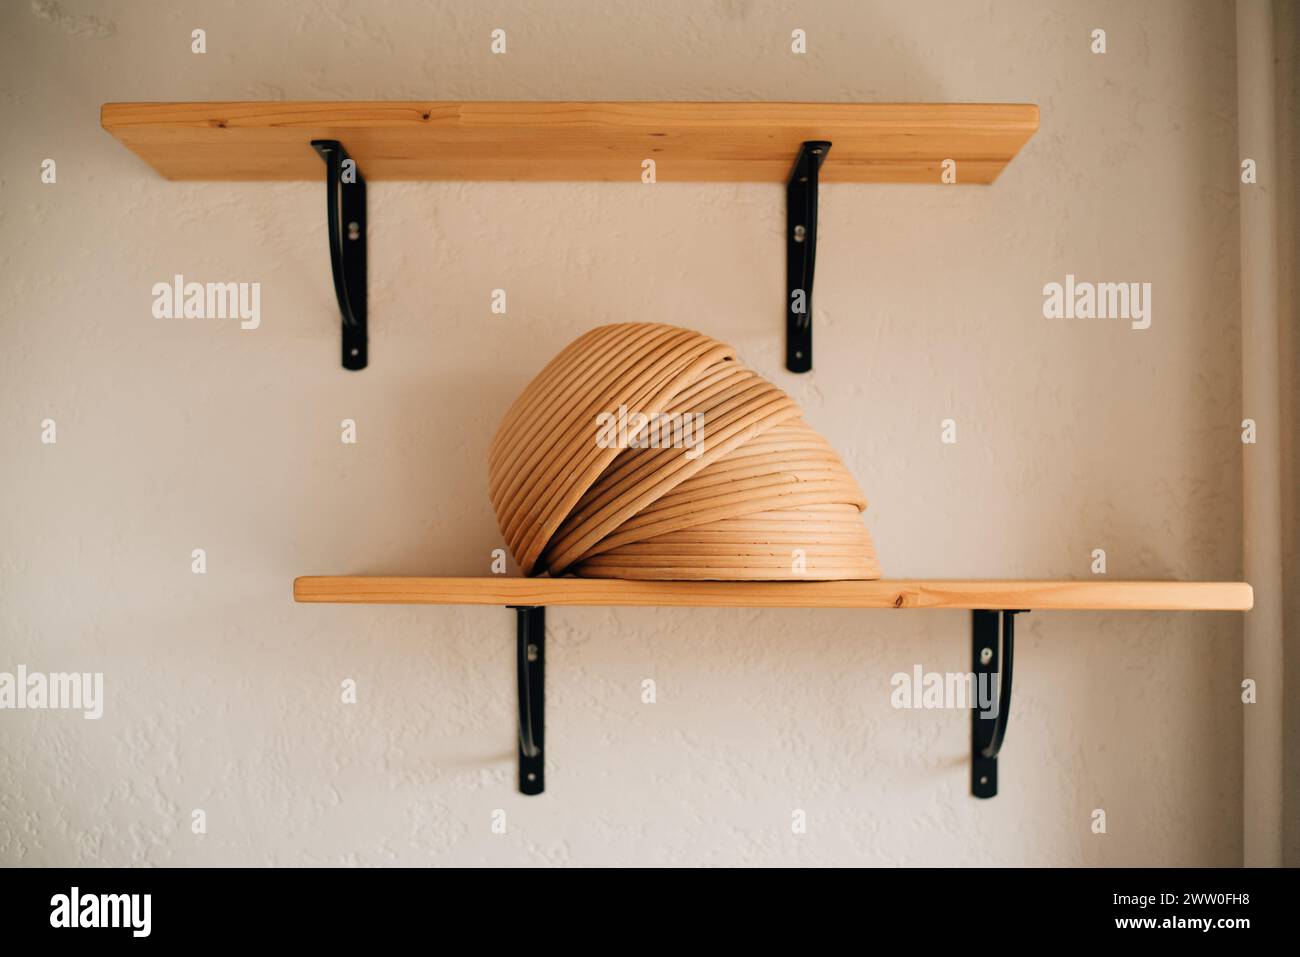 Proofkörbe für Brot auf einem Regal. Hochwertige Fotos Stockfoto